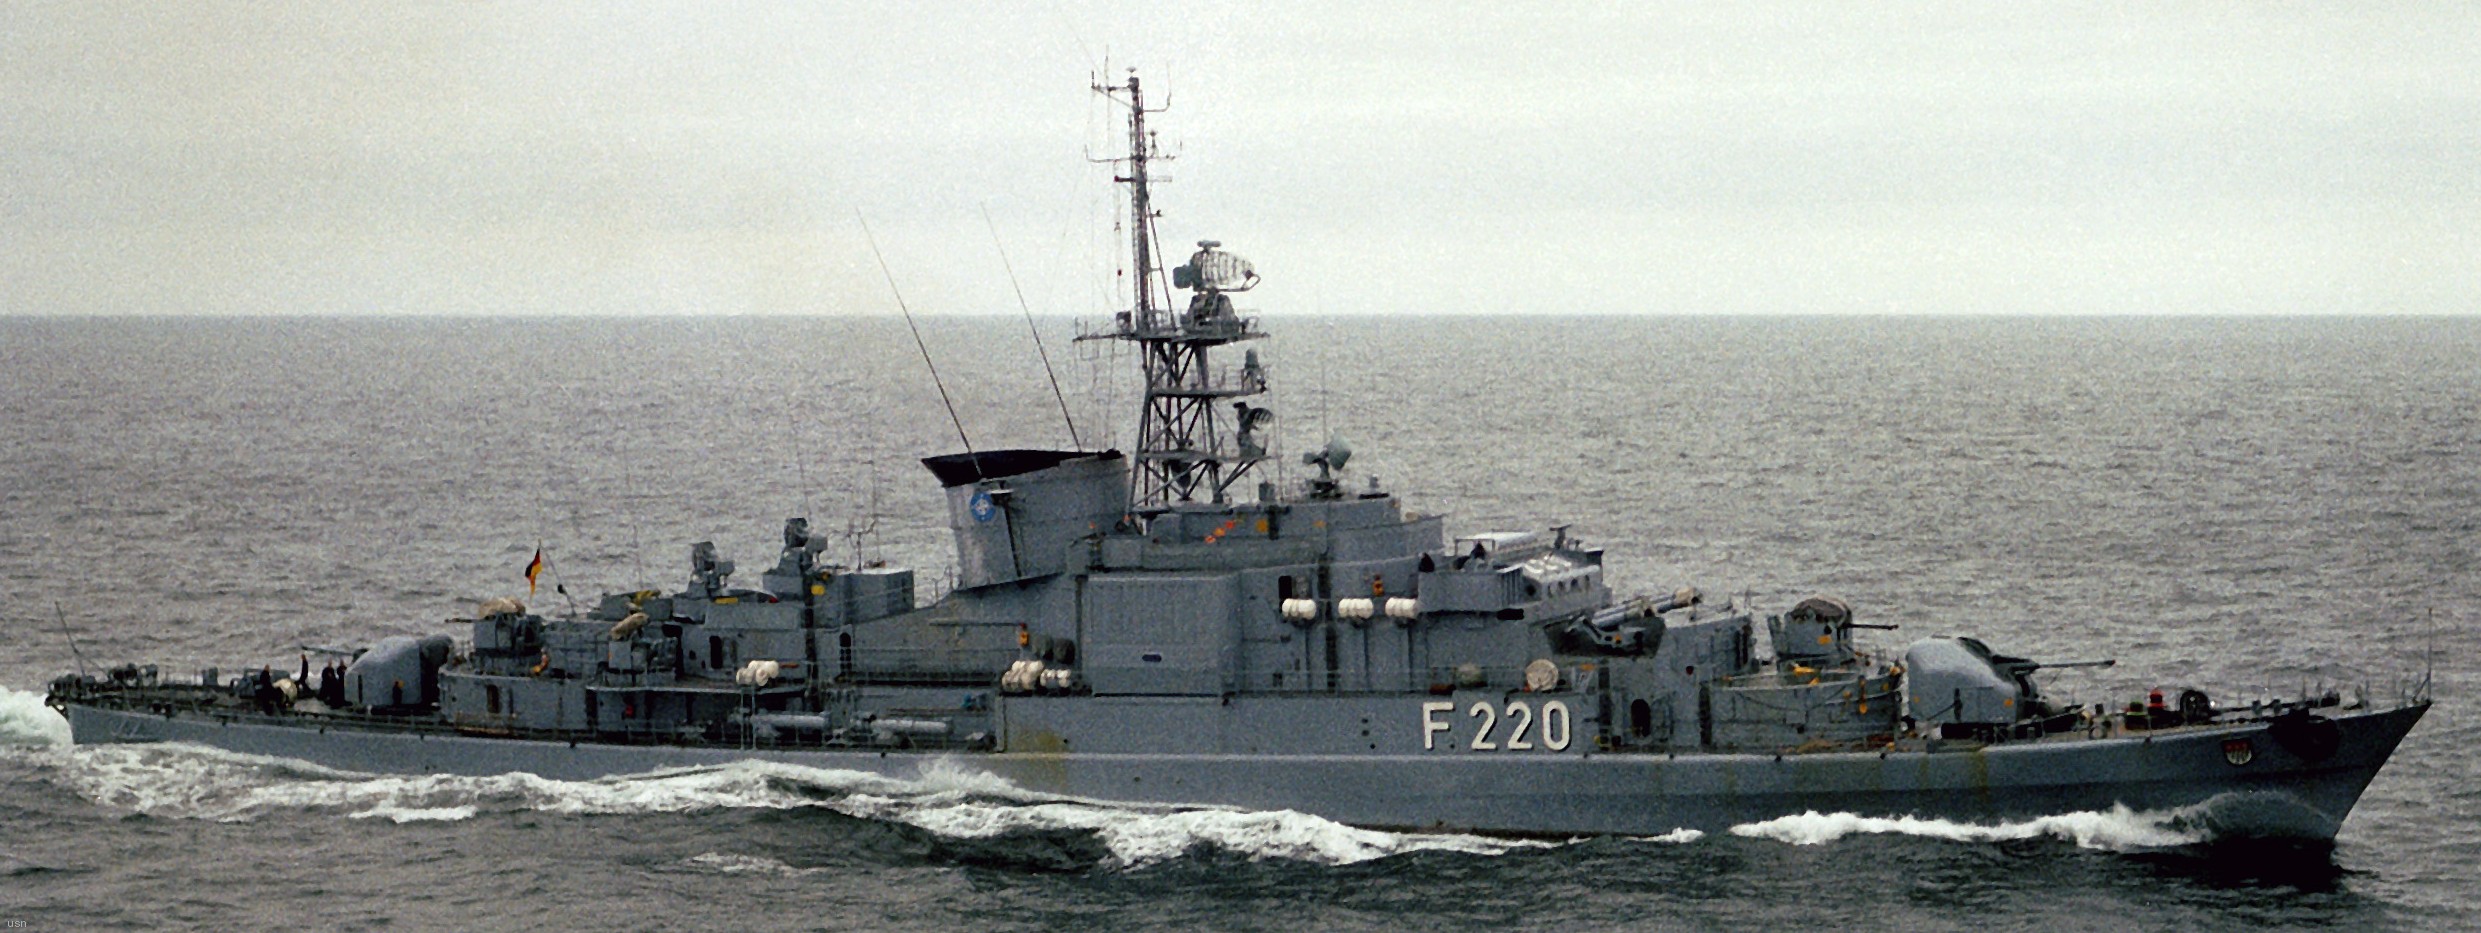 type 120 köln koln class frigate german navy deutsche marine emden augsburg karlsruhe lübeck braunschweig 02x